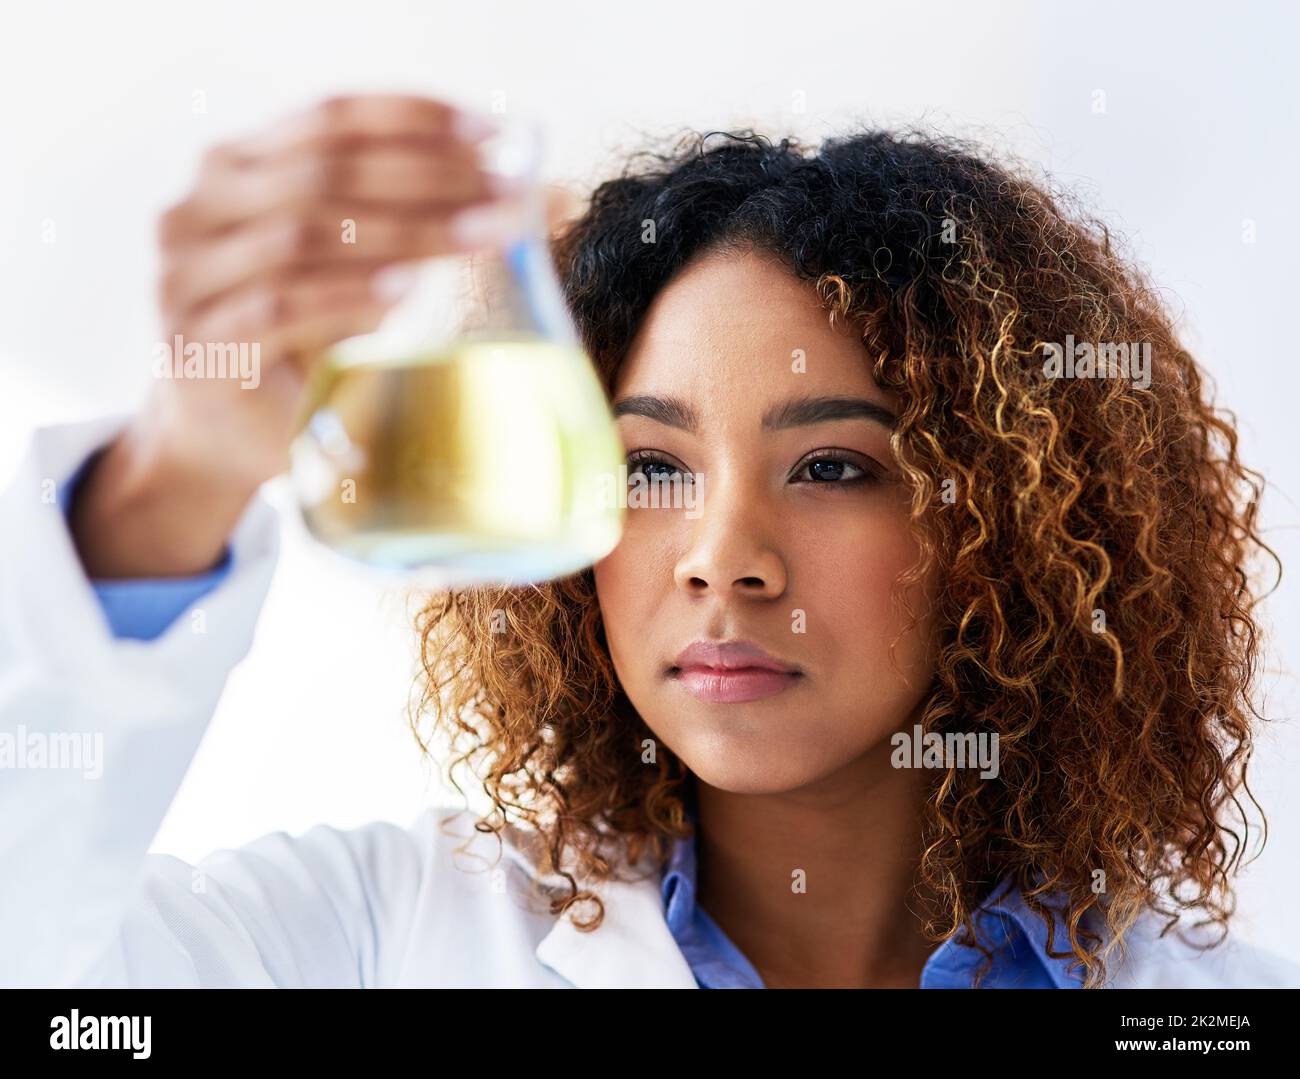 Nach einer Lösung suchen. Ausgeschnittene Aufnahme einer jungen Wissenschaftlerin, die im Labor ein Experiment durchführt. Stockfoto